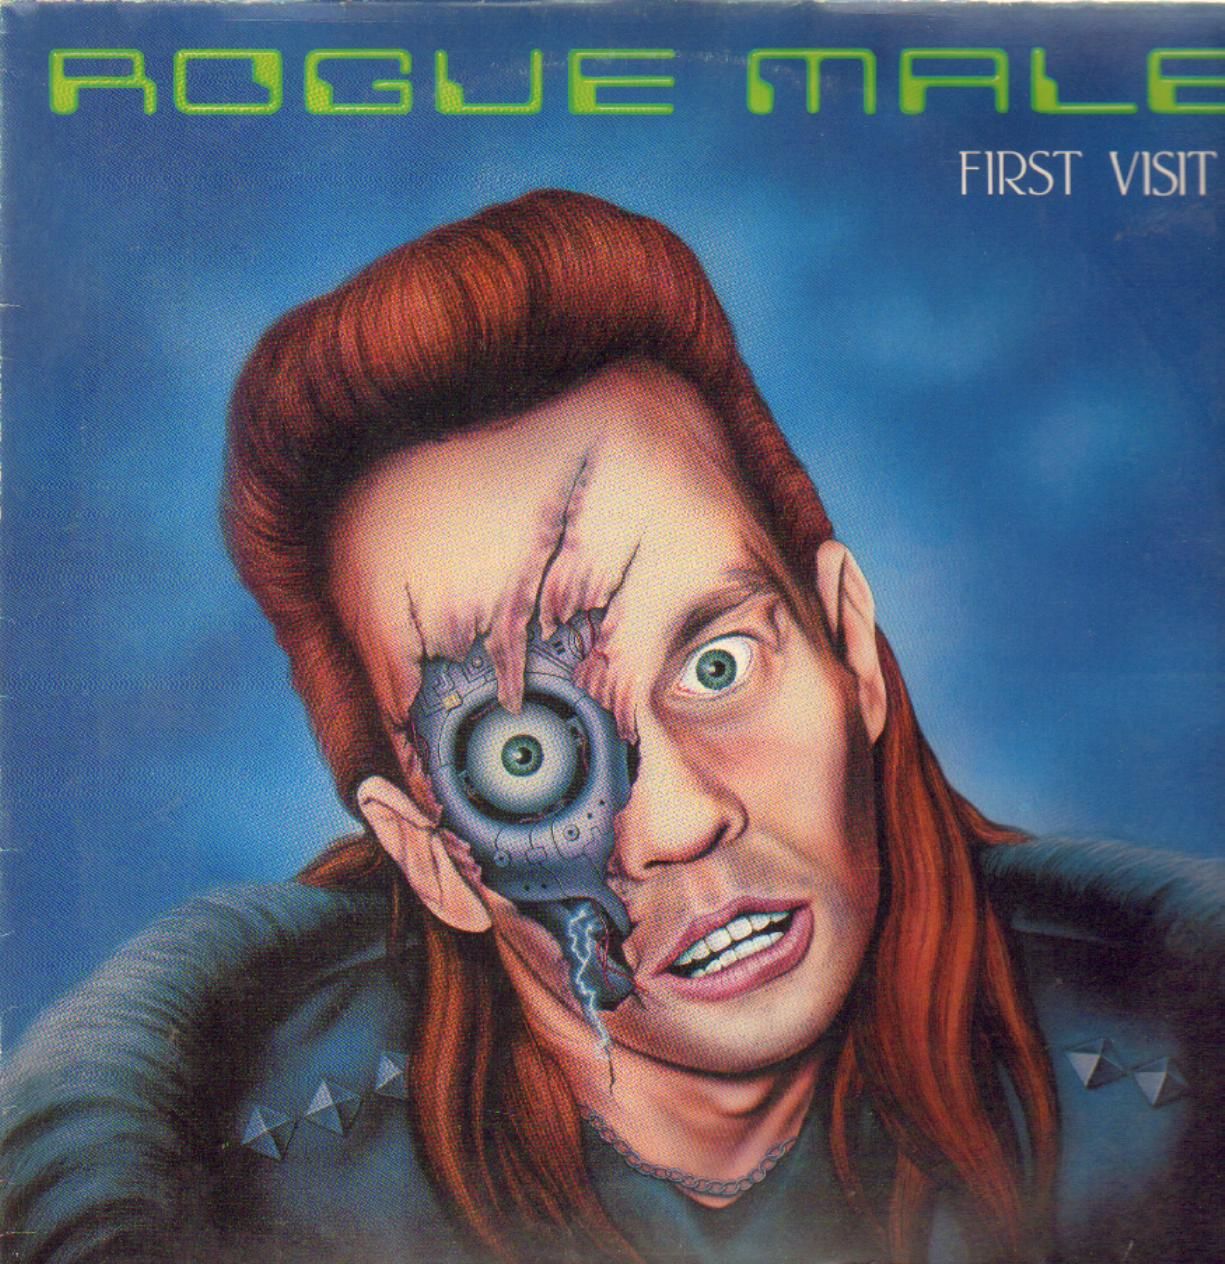 Rogue Male - First Visit (1985): A lemez megjelenése előtt mutatták be a mozik a Terminatort, aligha tagadható a Schwarzenegger-hatás.